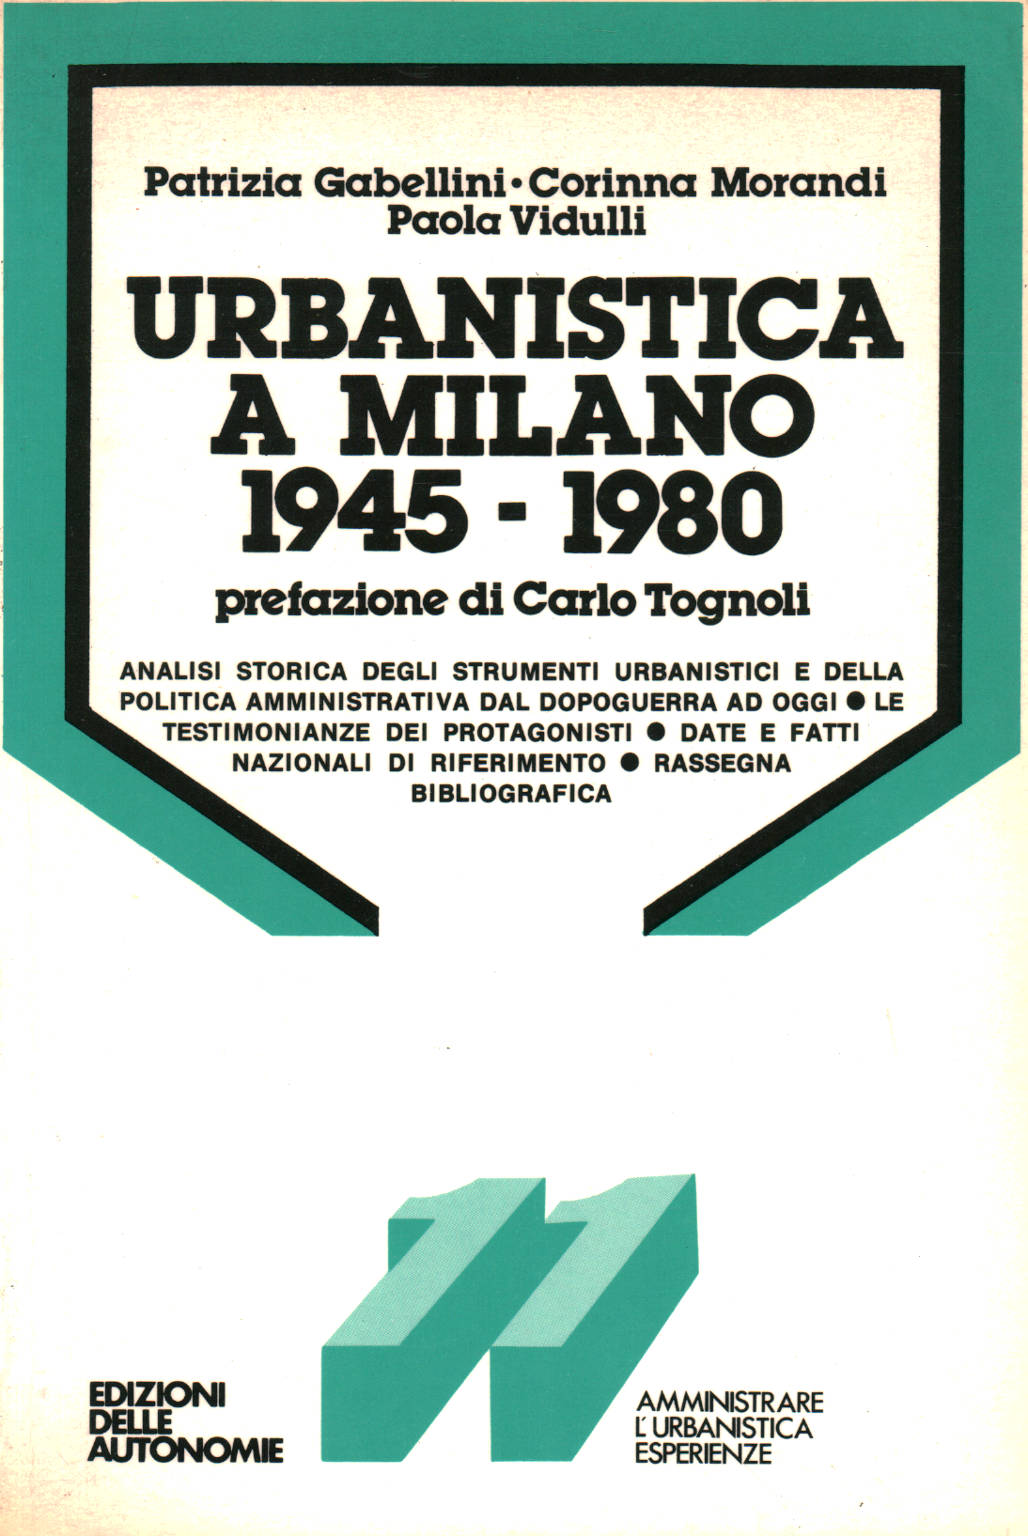 Urban planning in Milan 1945-1980